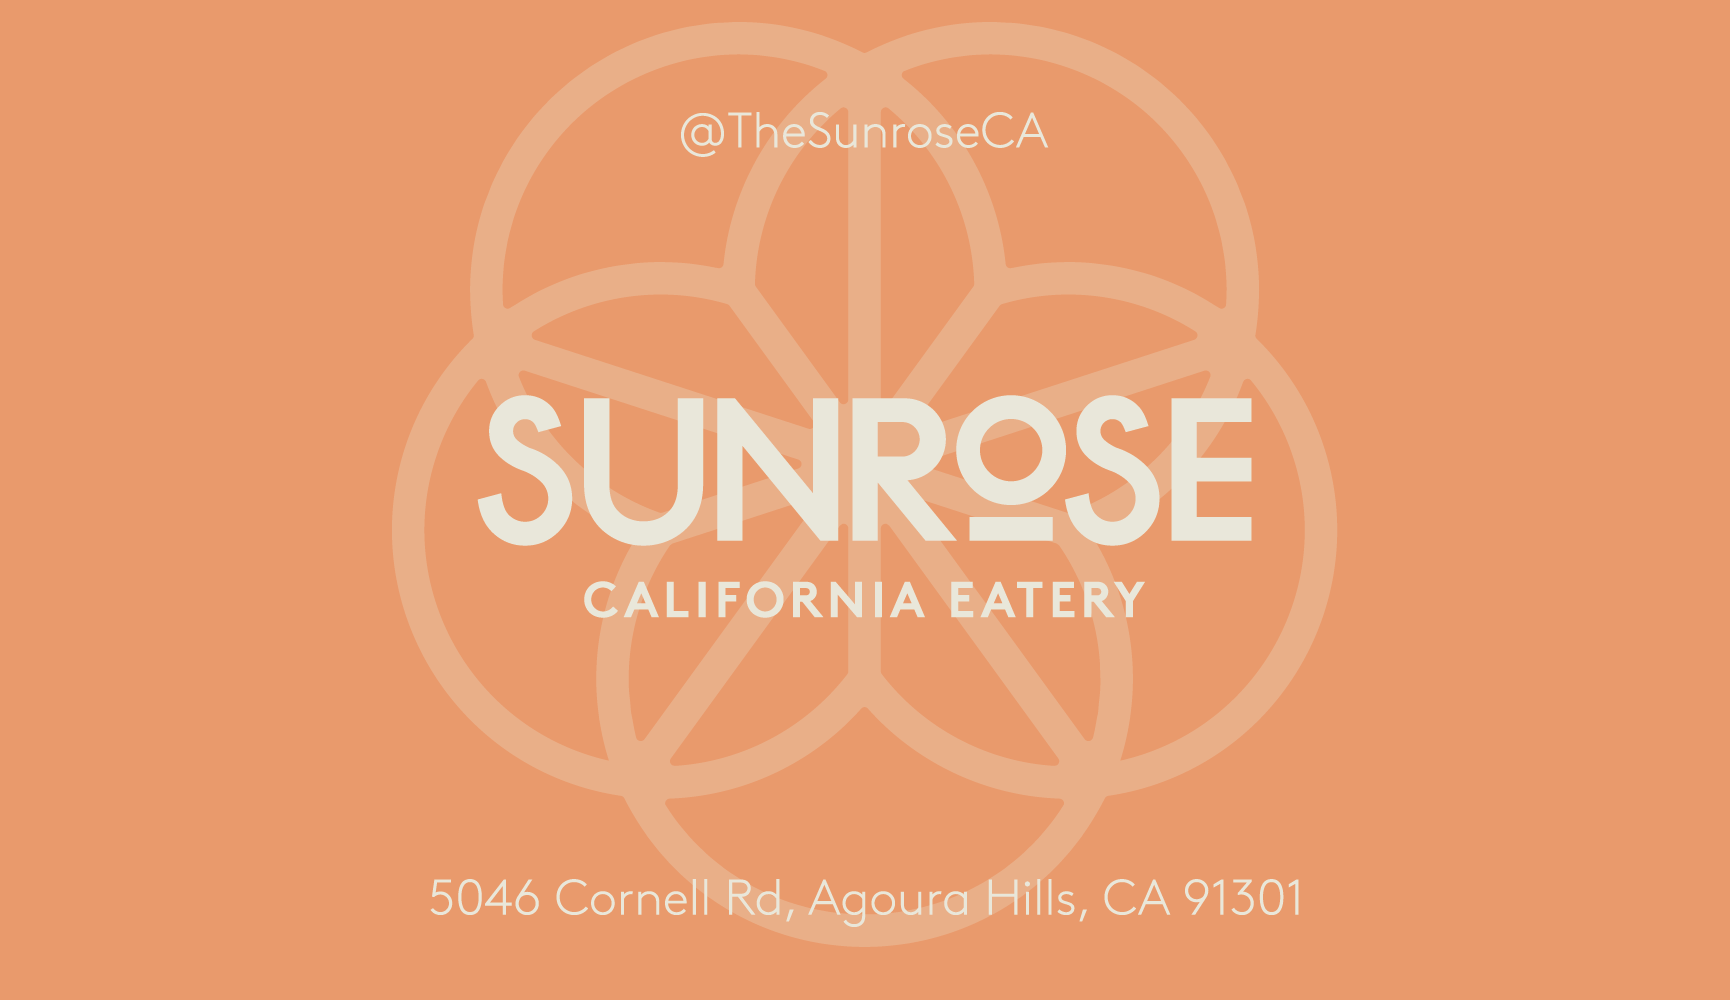 Sunrose California Eatery